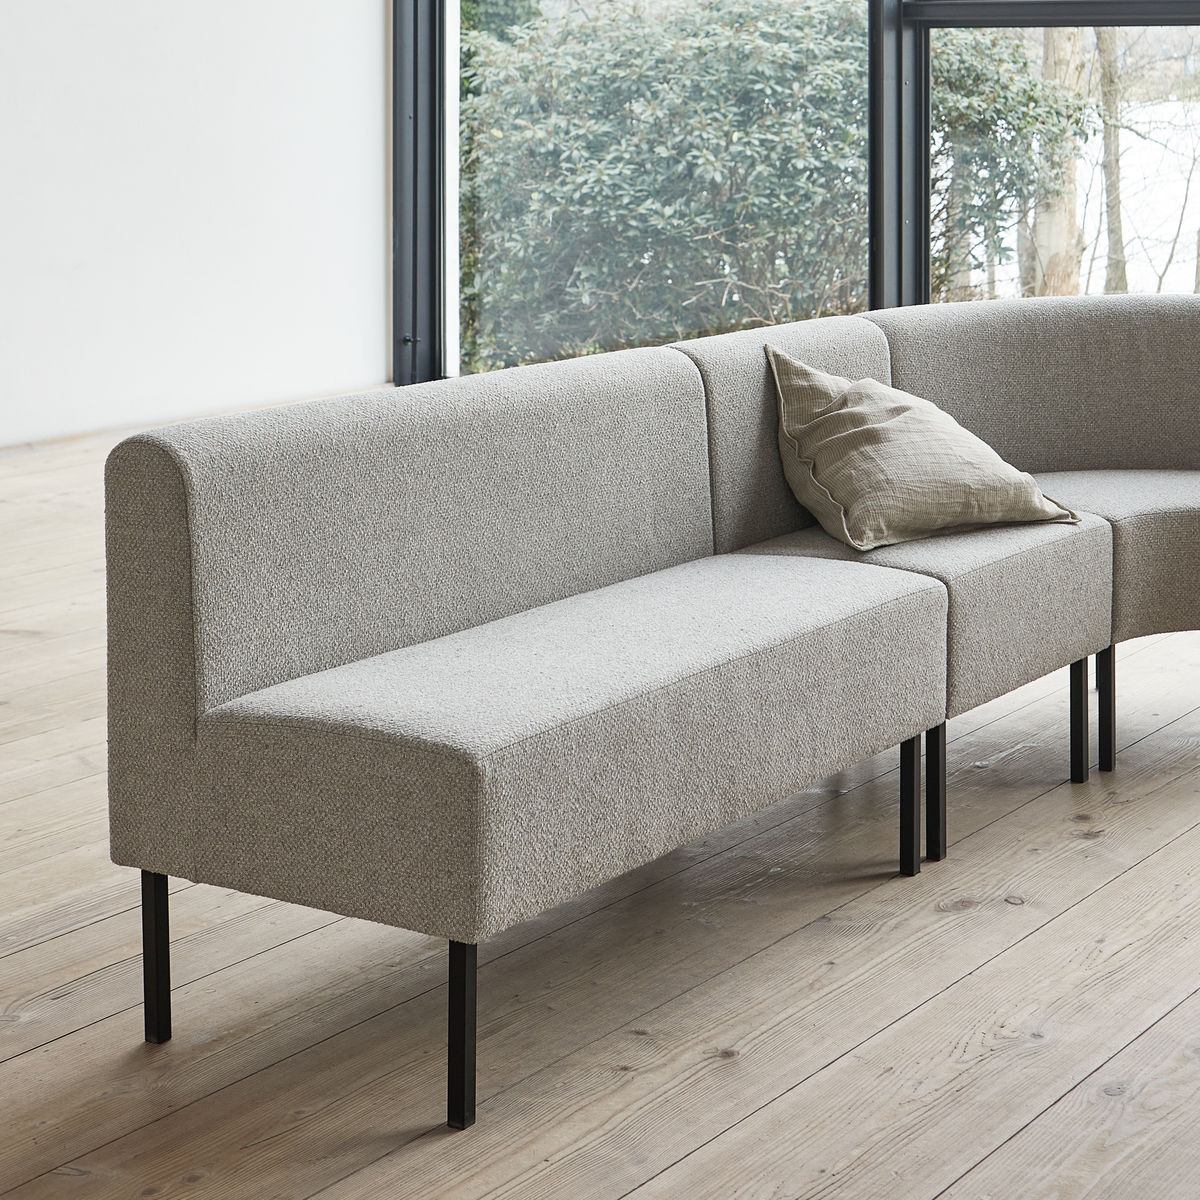 Sofa, 2 seater in Natur präsentiert im Onlineshop von KAQTU Design AG. 2er Sofa ist von House Doctor